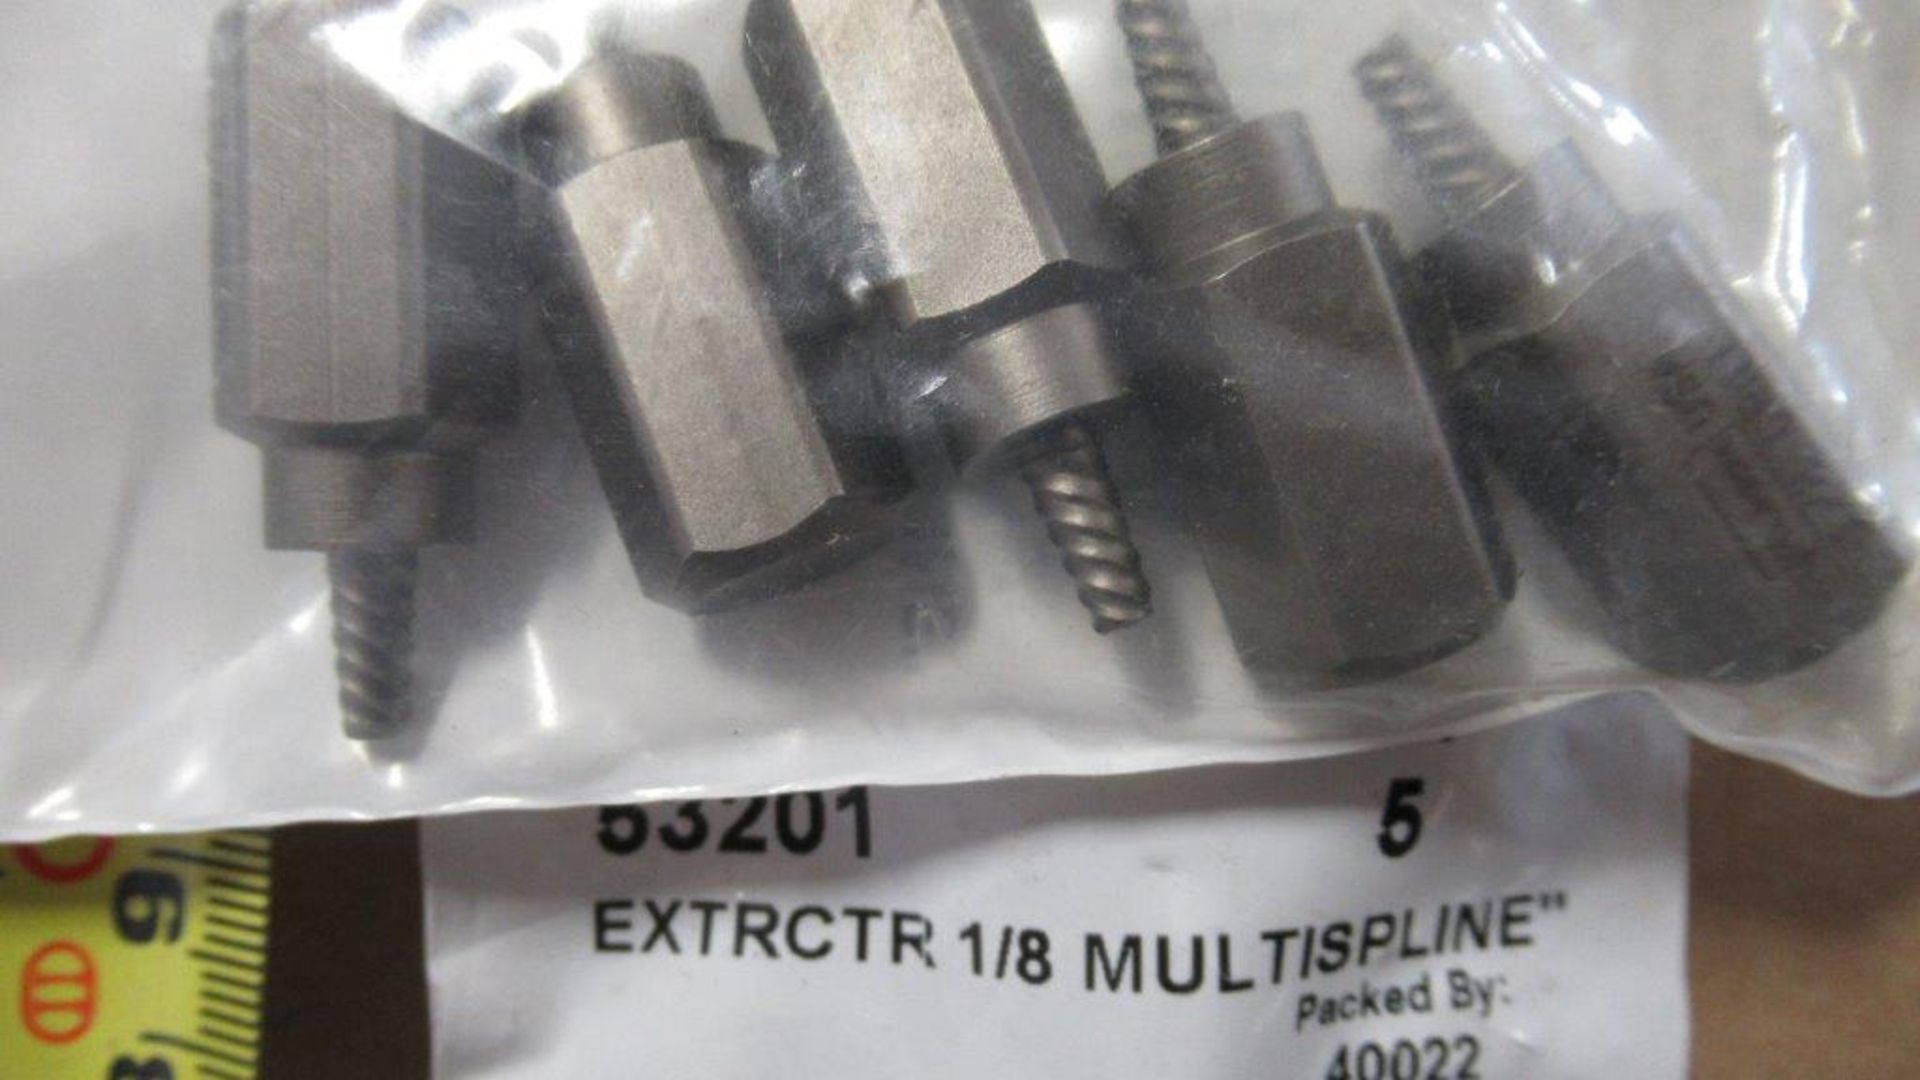 SETS: MUTLI SPLINE SCREW EXTRACTOR, ( 5 PCS / SET) 1/8'', IRWIN 53201